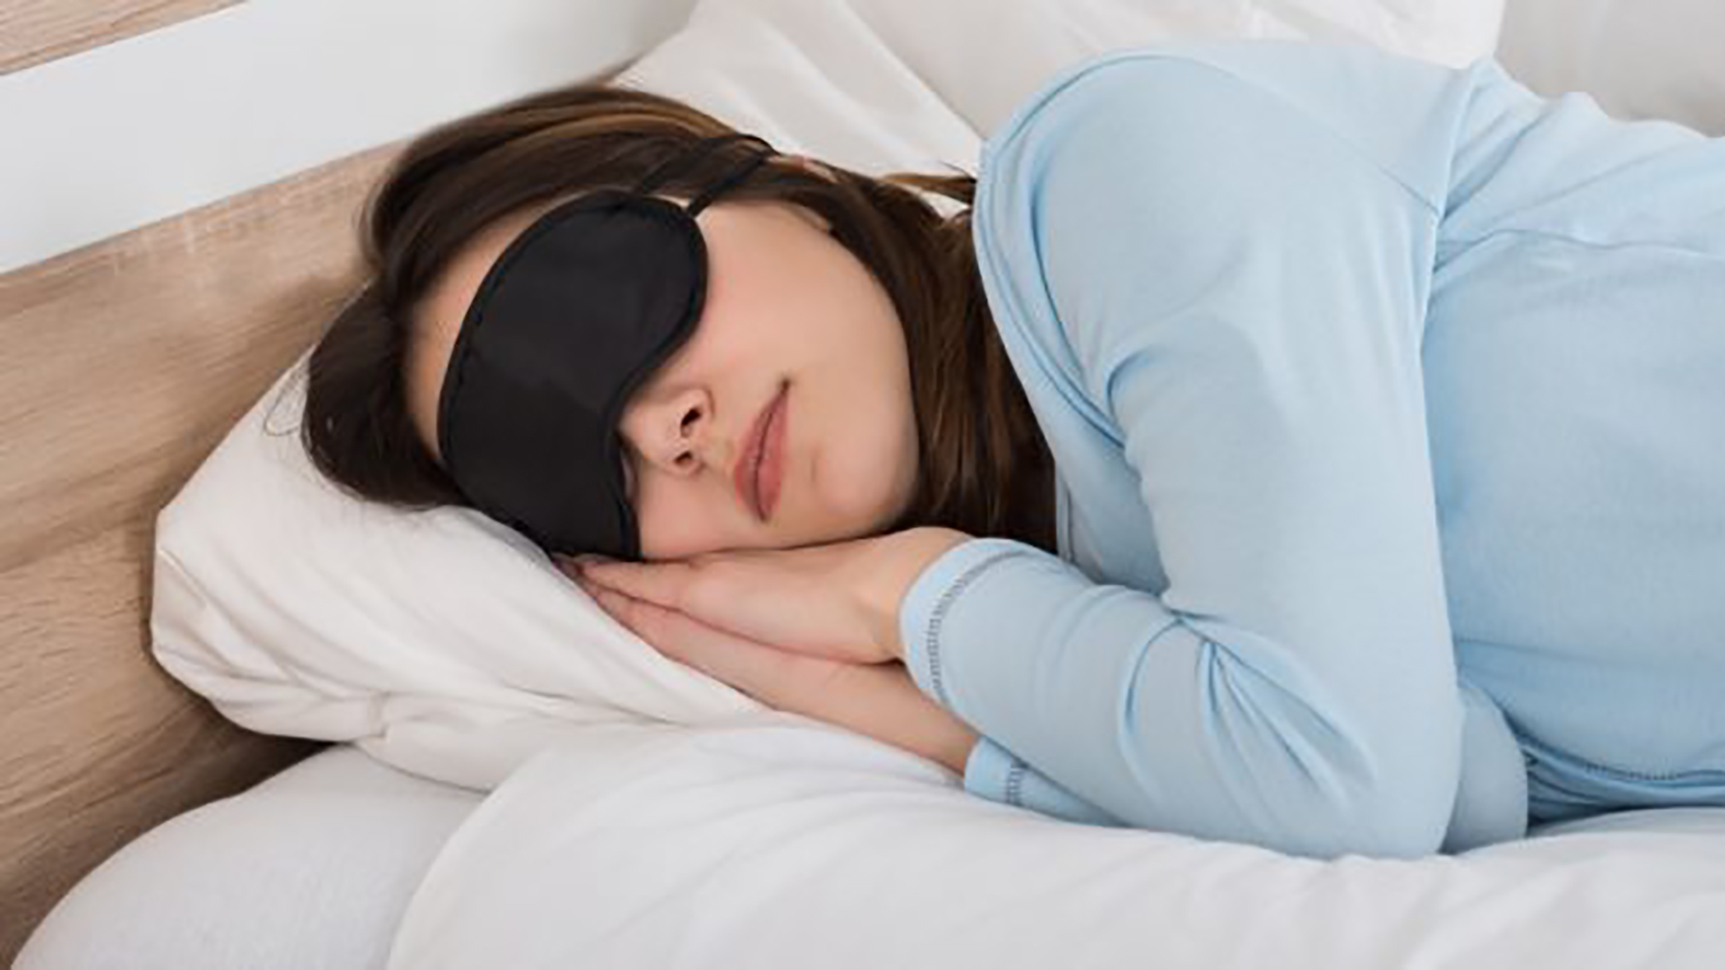 masque de sommeil confortable pour dormeurs lat/éraux Boniesun Masque pour les yeux Blackout pour dormir Masque de sommeil ultra mince pour femmes hommes